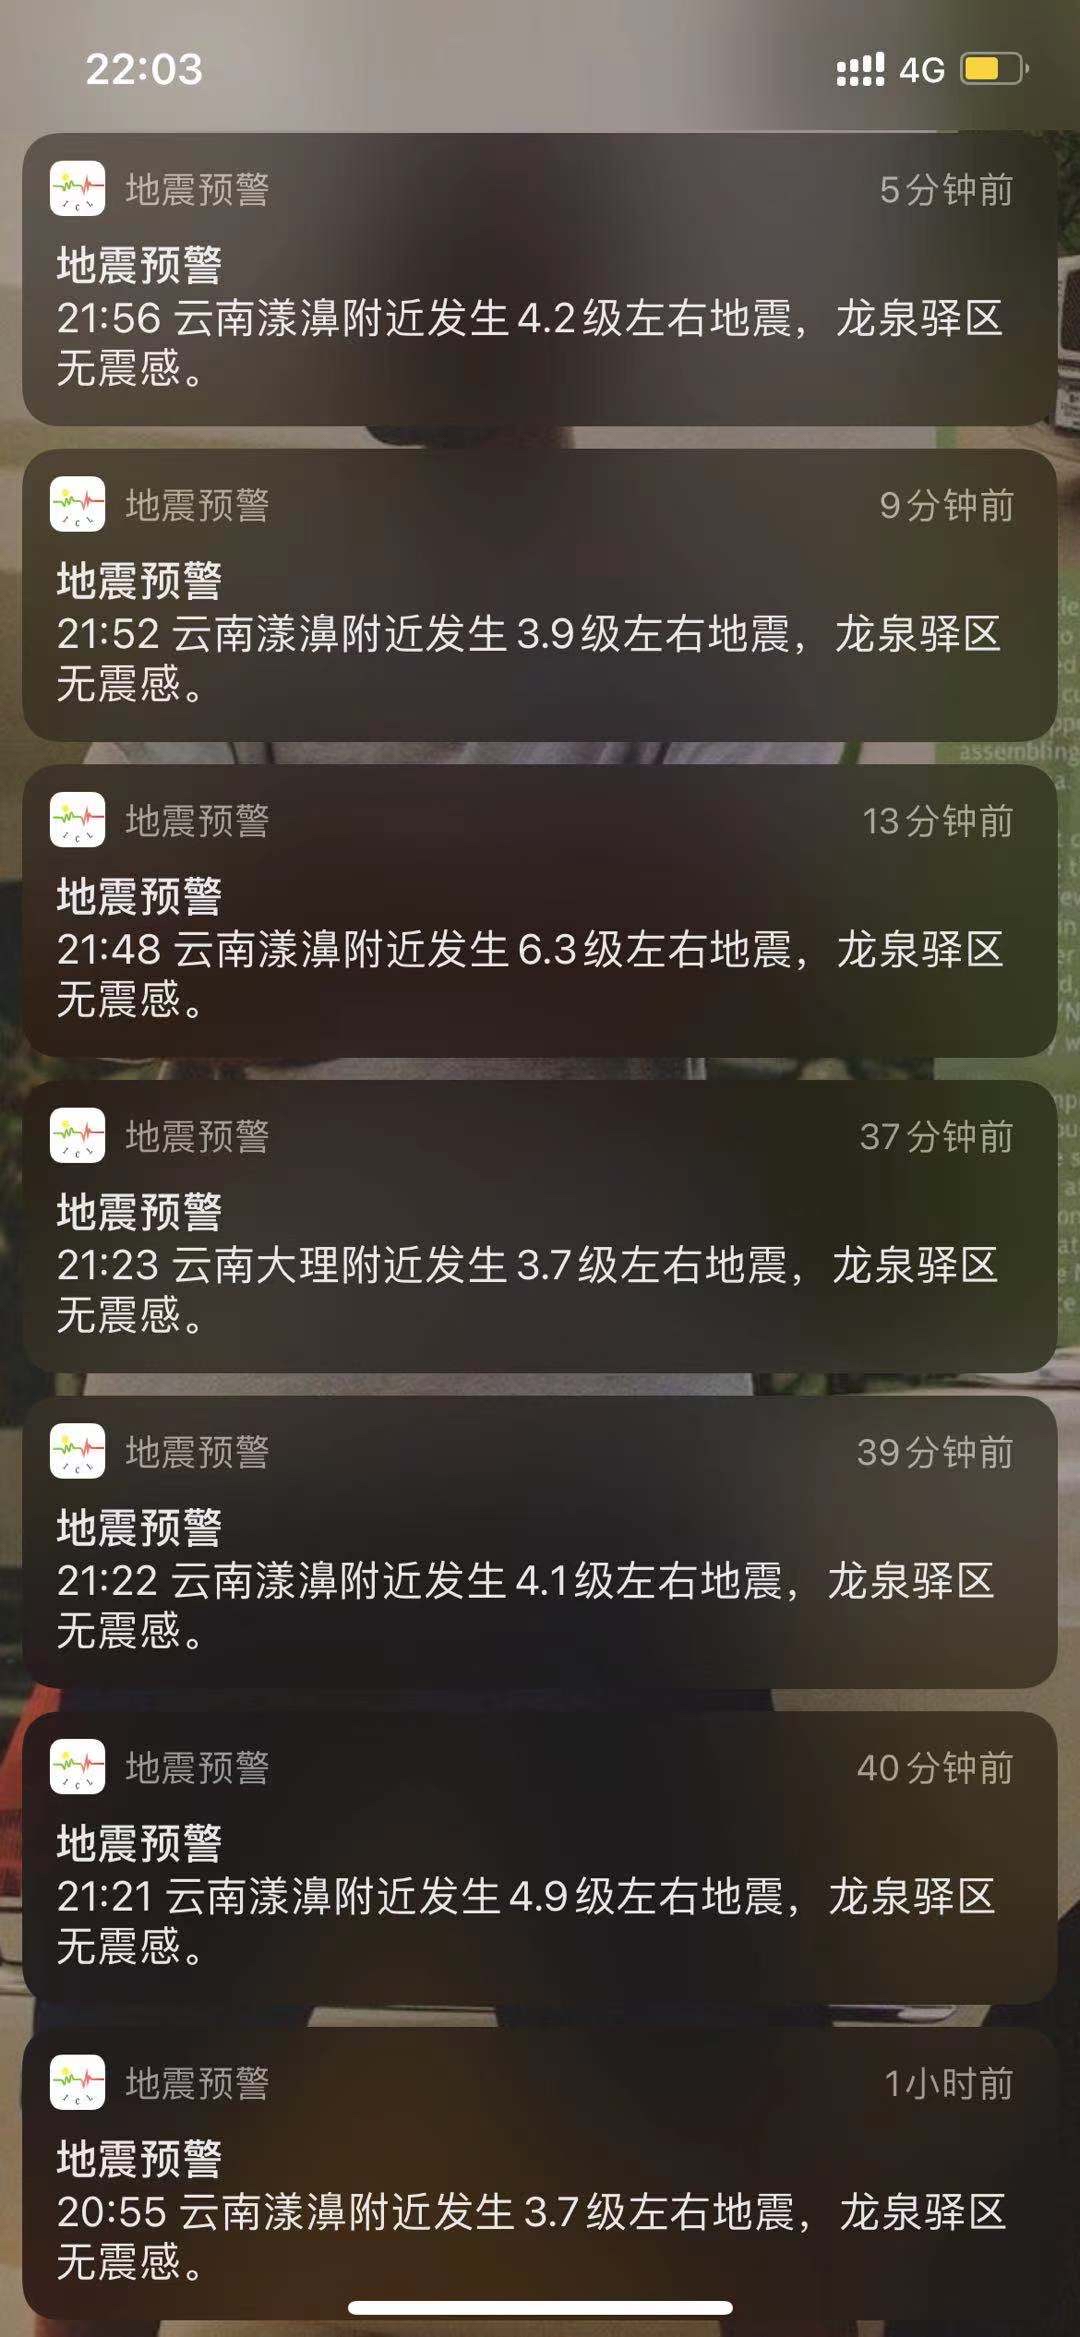 中国地震预警网连续预警云南漾濞地震 电视手机“大喇叭”全发预警